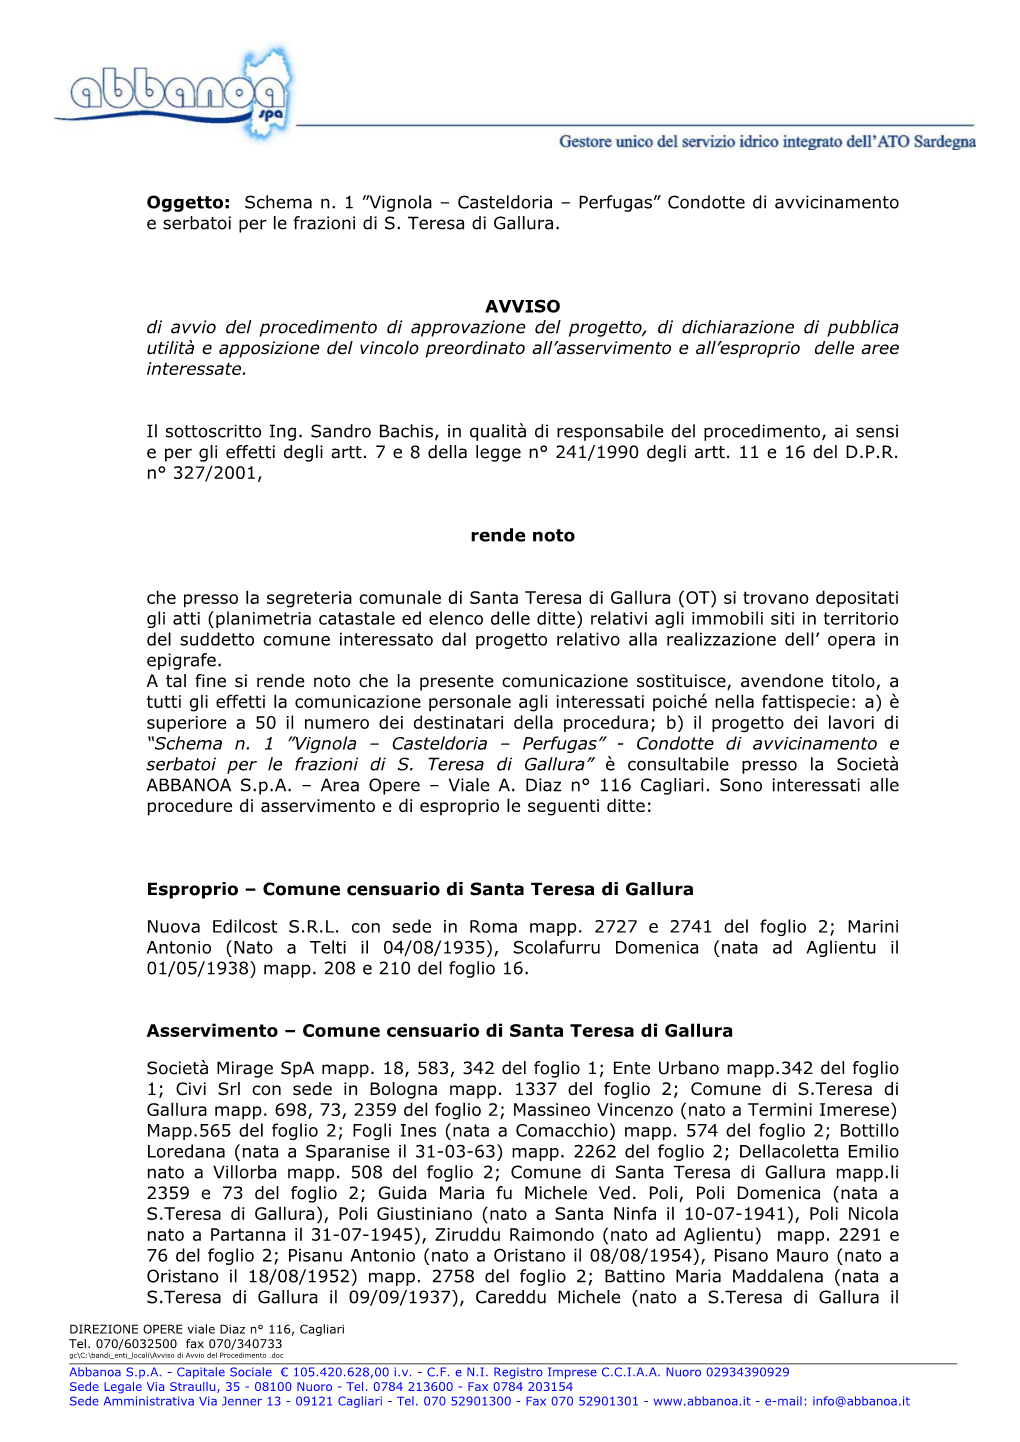 Oggetto: Schema N. 1 ”Vignola – Casteldoria – Perfugas” Condotte Di Avvicinamento E Serbatoi Per Le Frazioni Di S